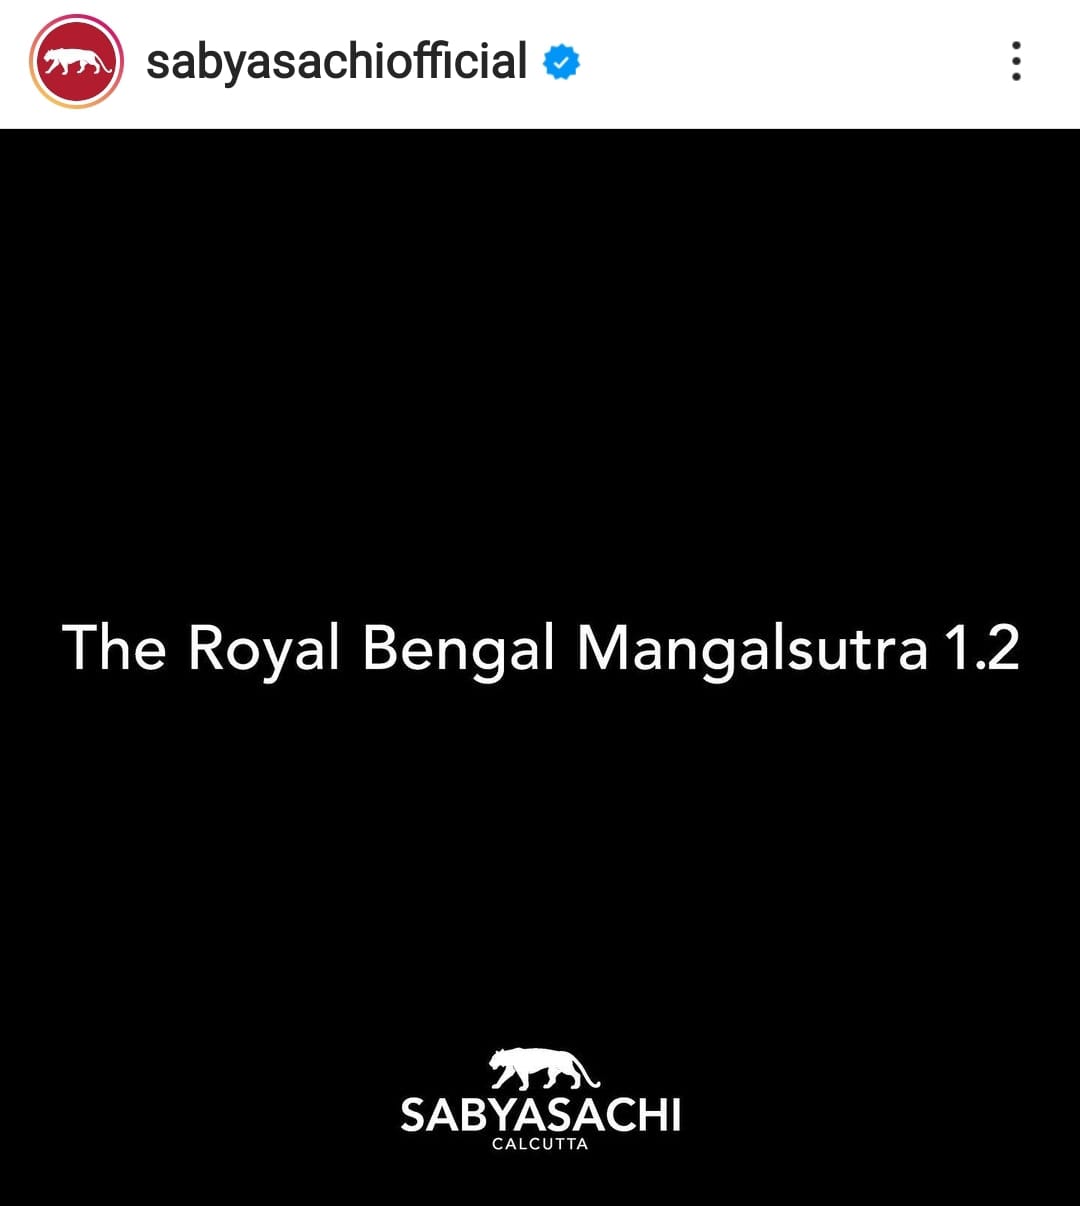 MP के गृह मंत्री Narottam की चेतावनी के बाद सब्यसाची ने Instagram से हटाया मंगलसूत्र का विज्ञापन